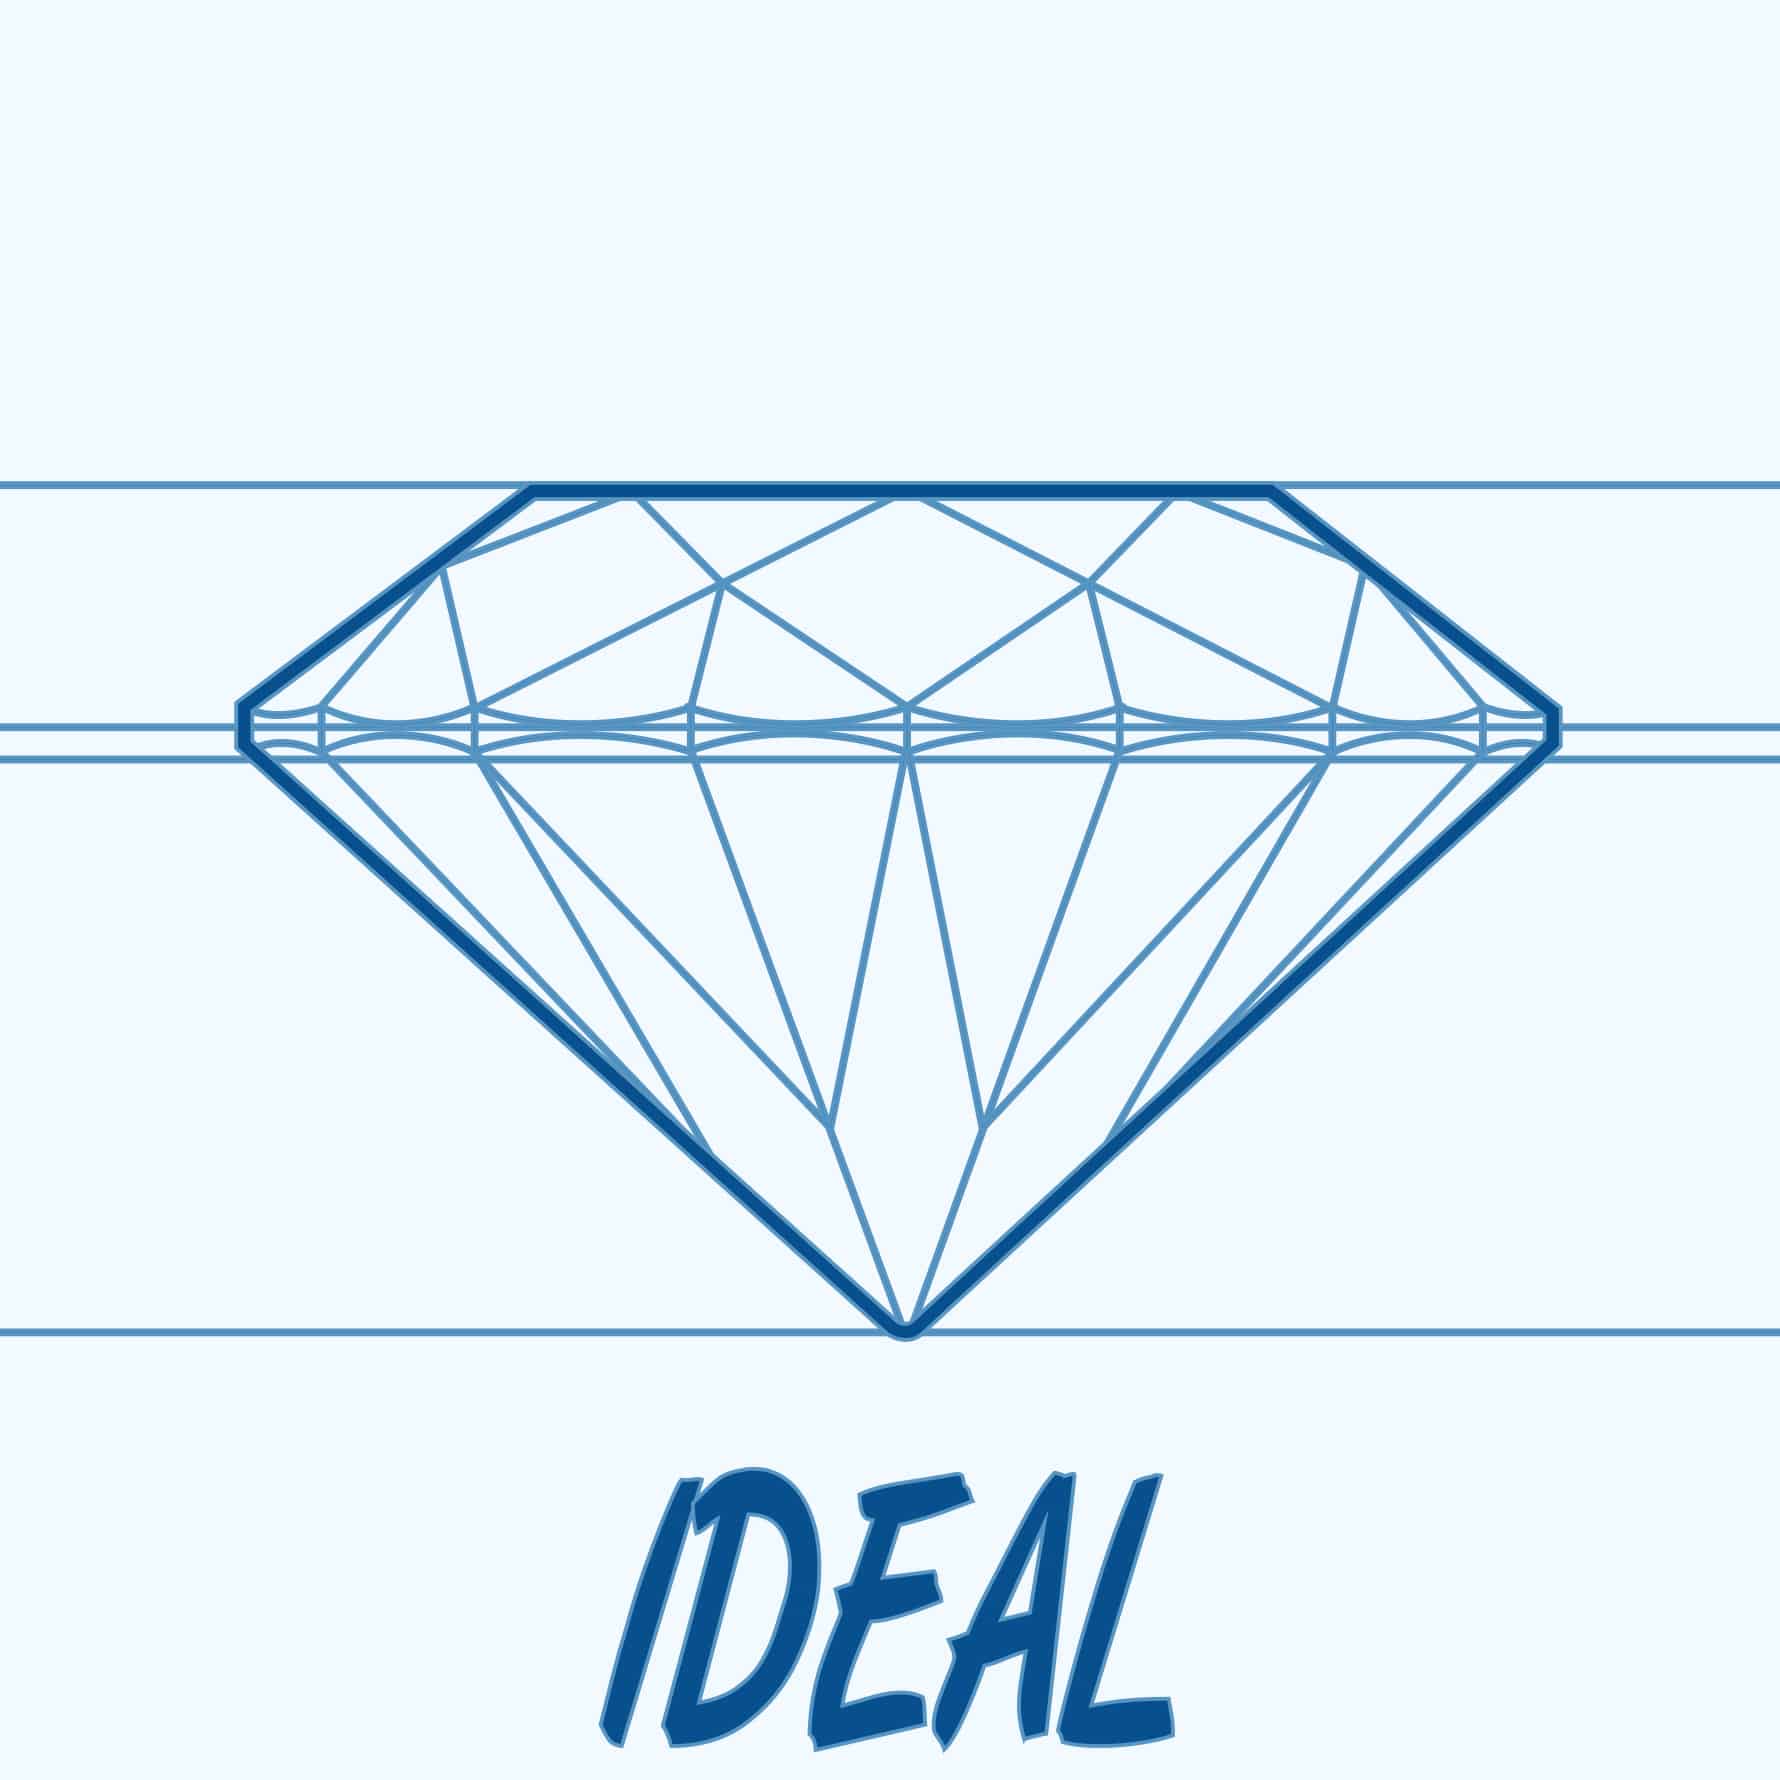 ideal cut round diamond